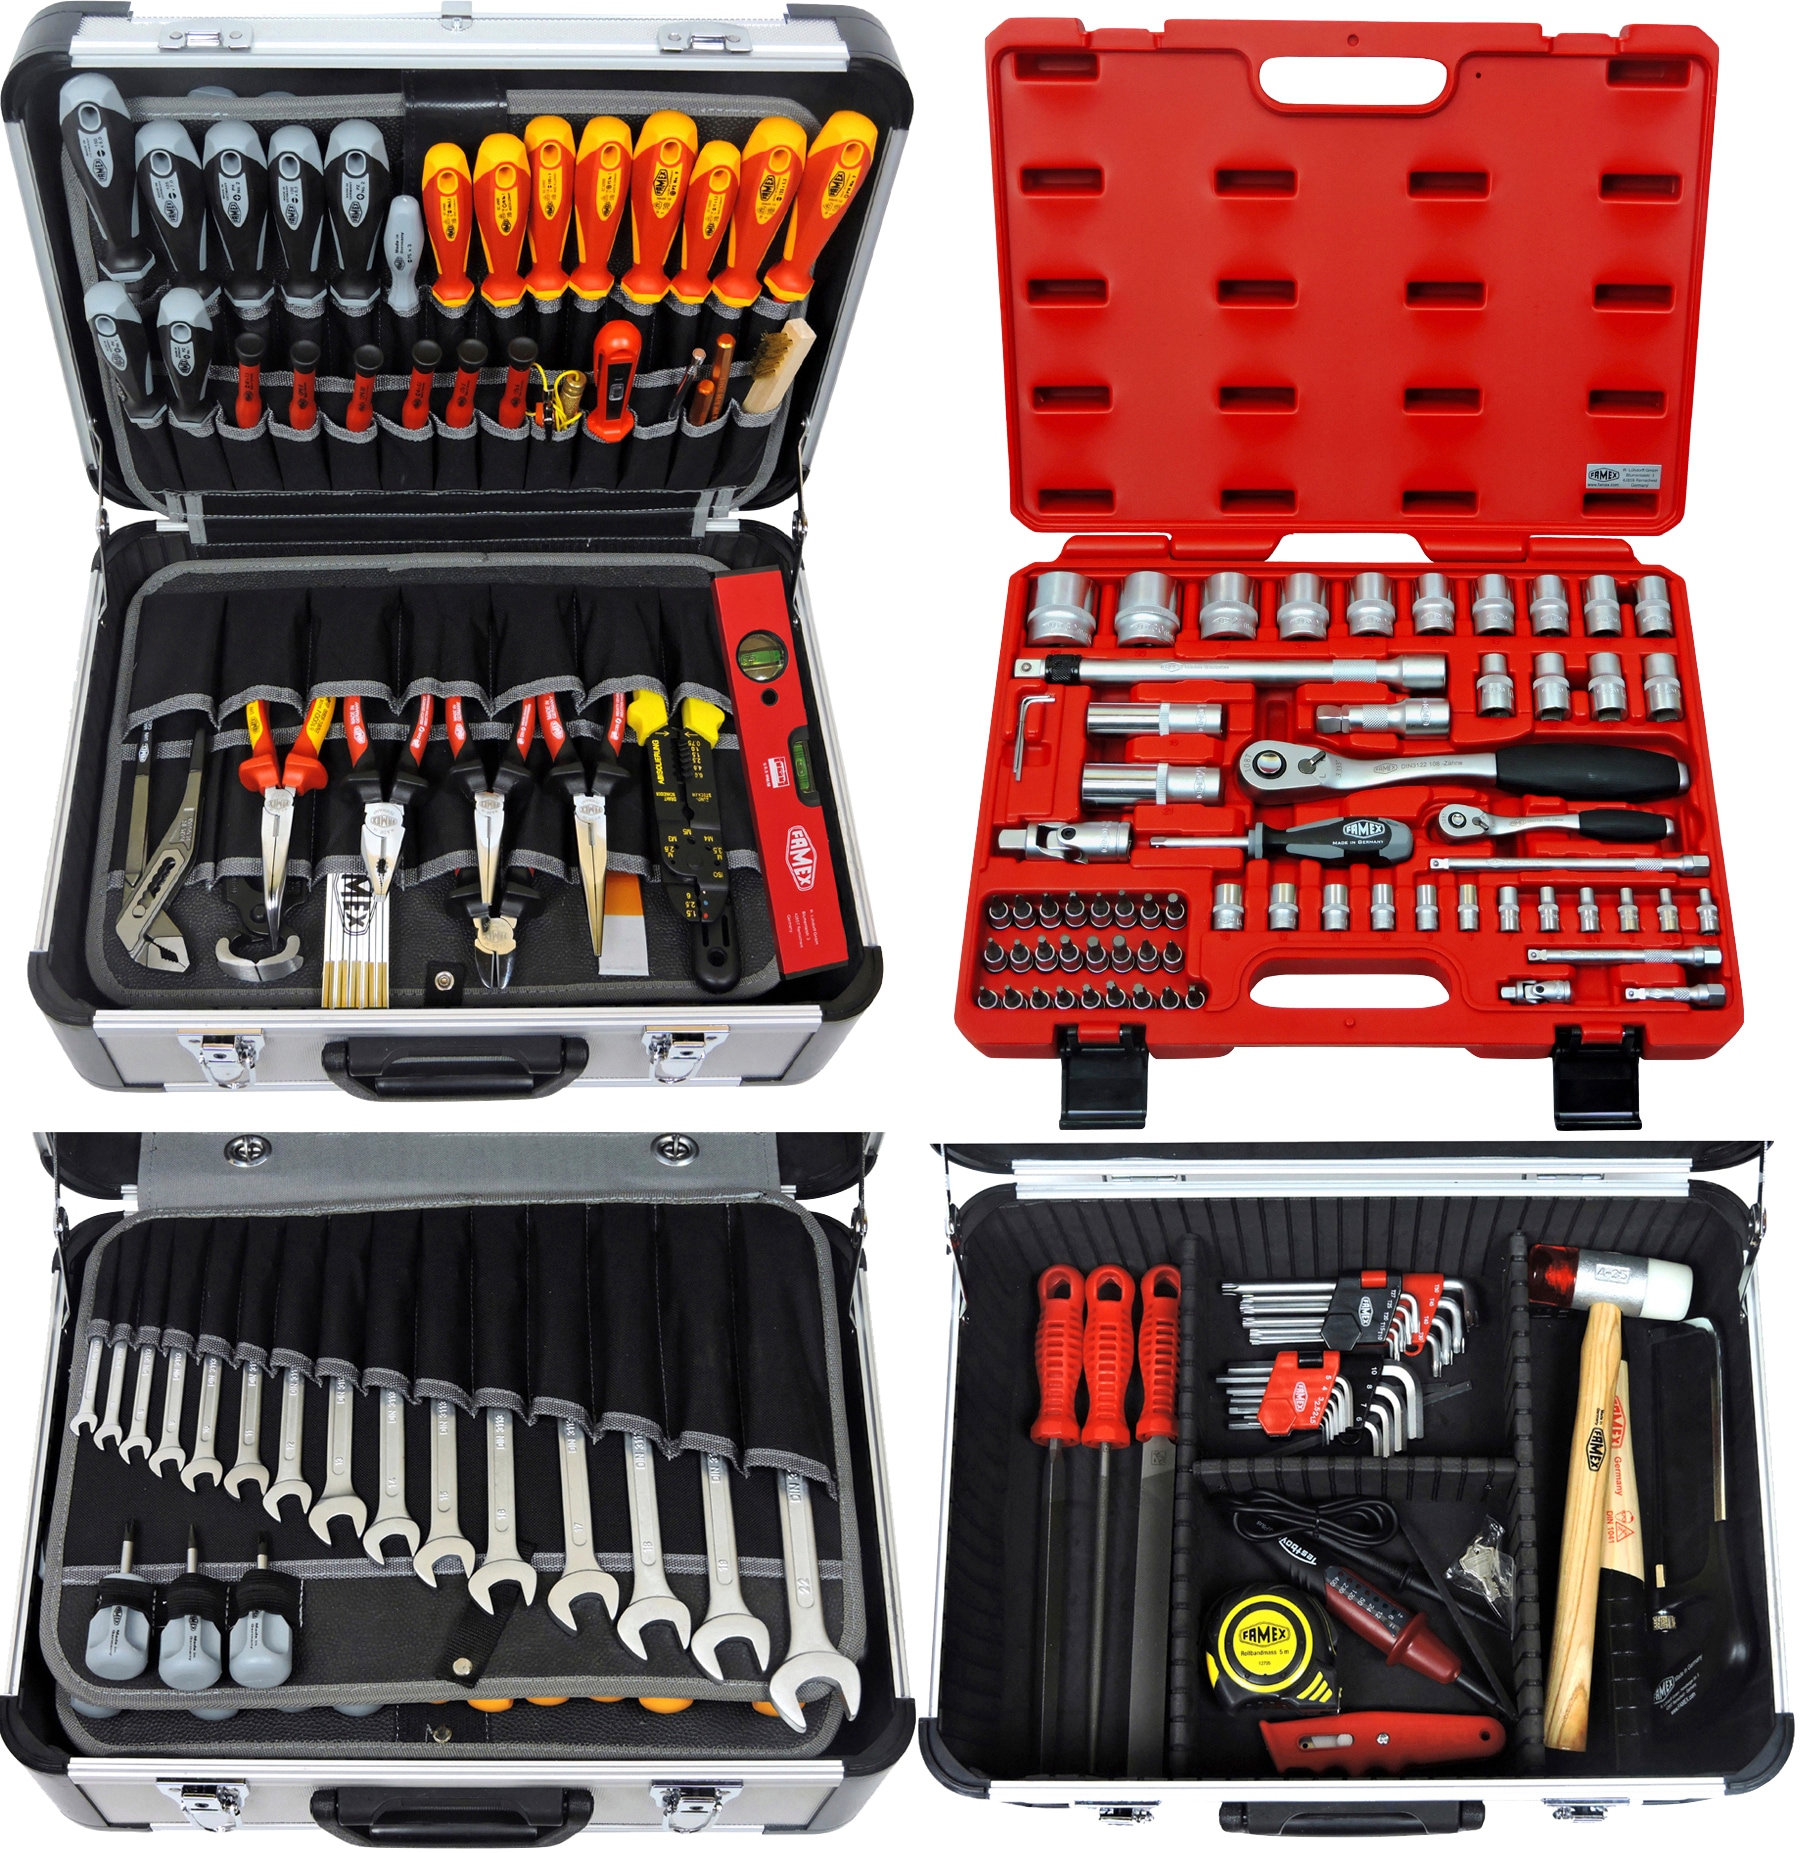 FAMEX 418-18 Profi Alu Werkzeugkoffer mit Steckschlüsselsatz in Top-Qualität | Werkzeugkiste mit High-End Werkzeug für den gewerblichen Einsatz